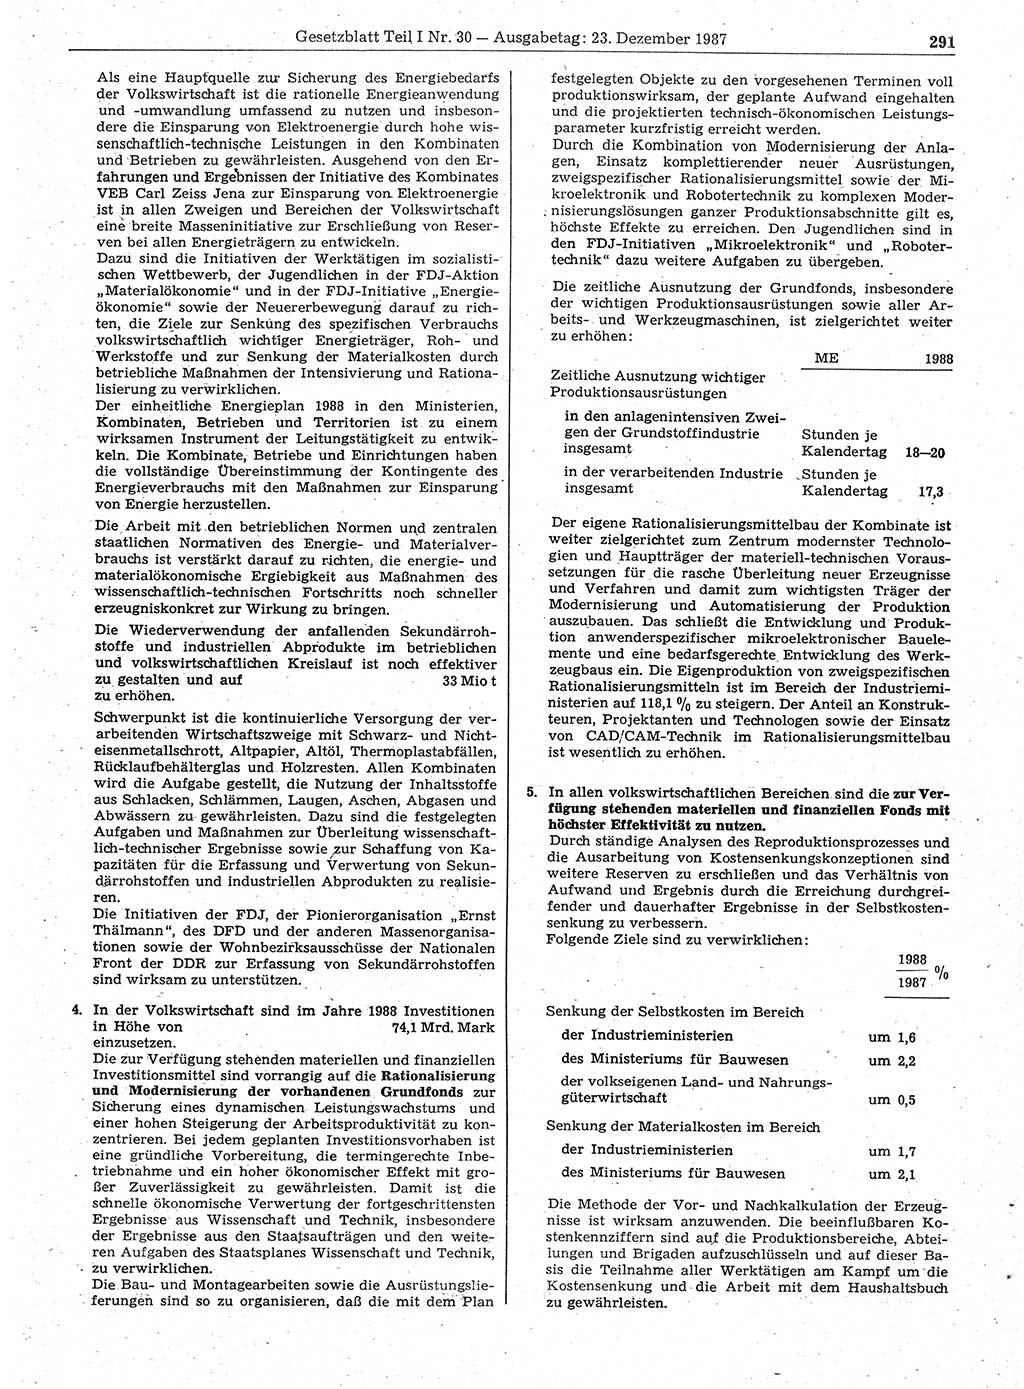 Gesetzblatt (GBl.) der Deutschen Demokratischen Republik (DDR) Teil Ⅰ 1987, Seite 291 (GBl. DDR Ⅰ 1987, S. 291)